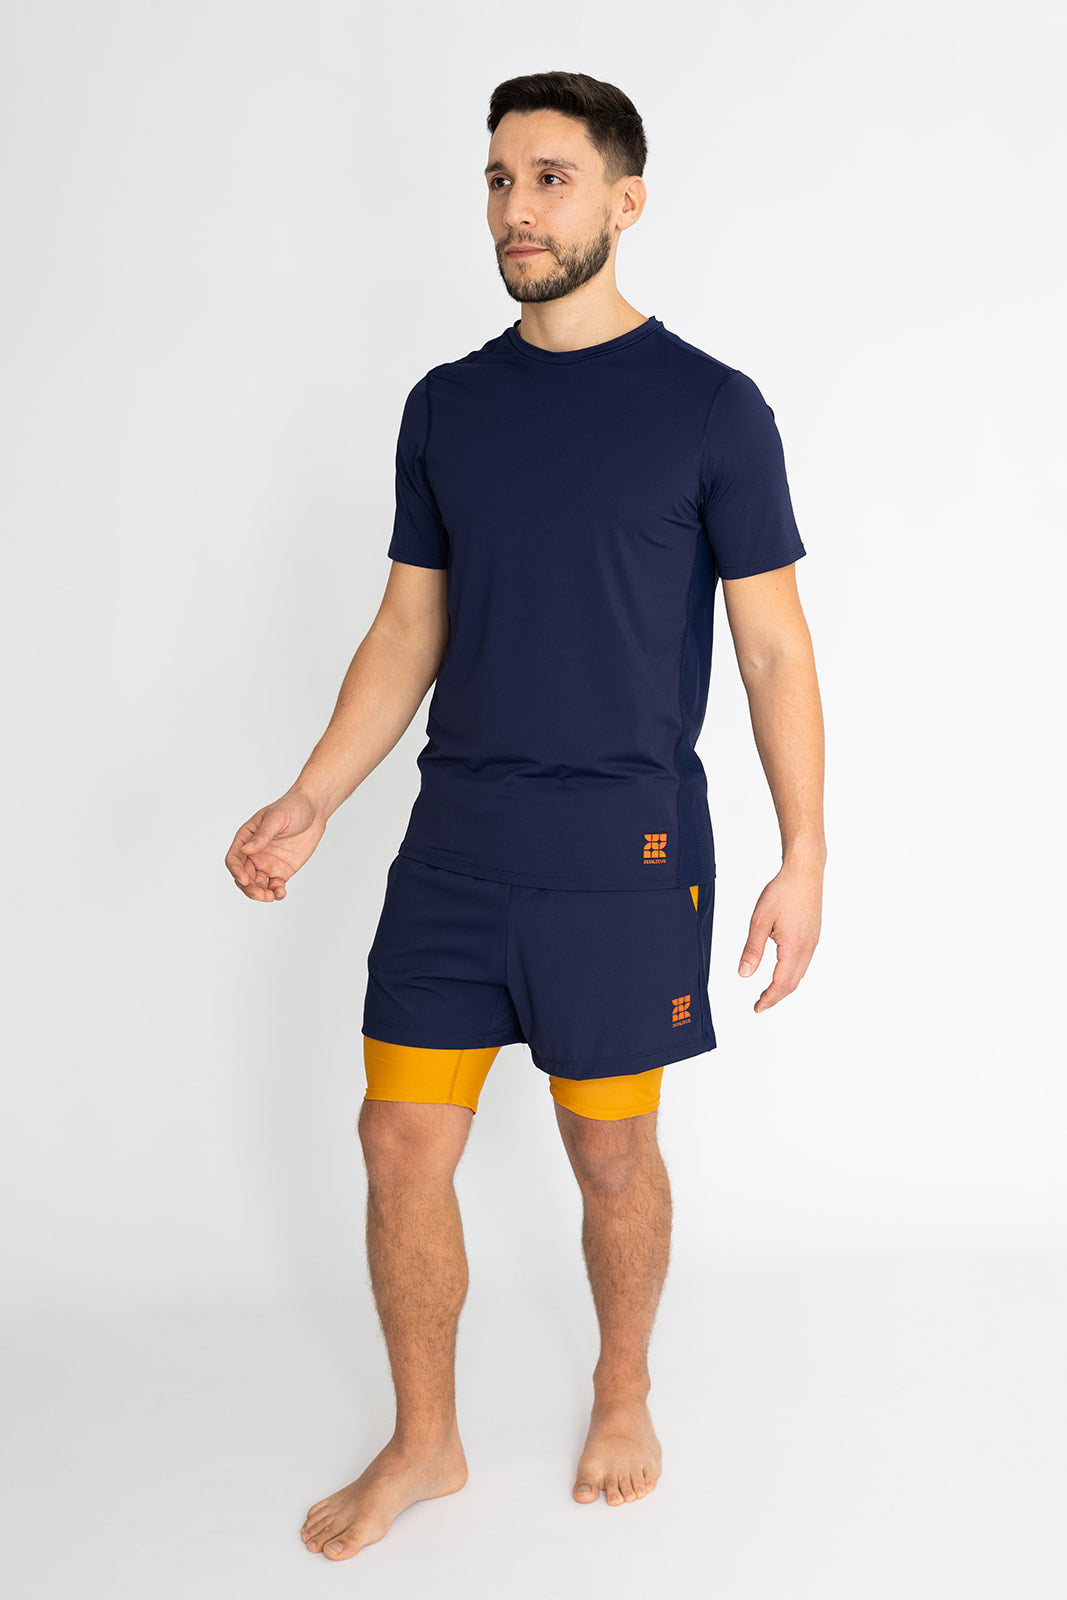 Conall 2-in-1 Shorts-Shorts-zed & zeus-Navy/Yellow-XL-ZED & ZEUS